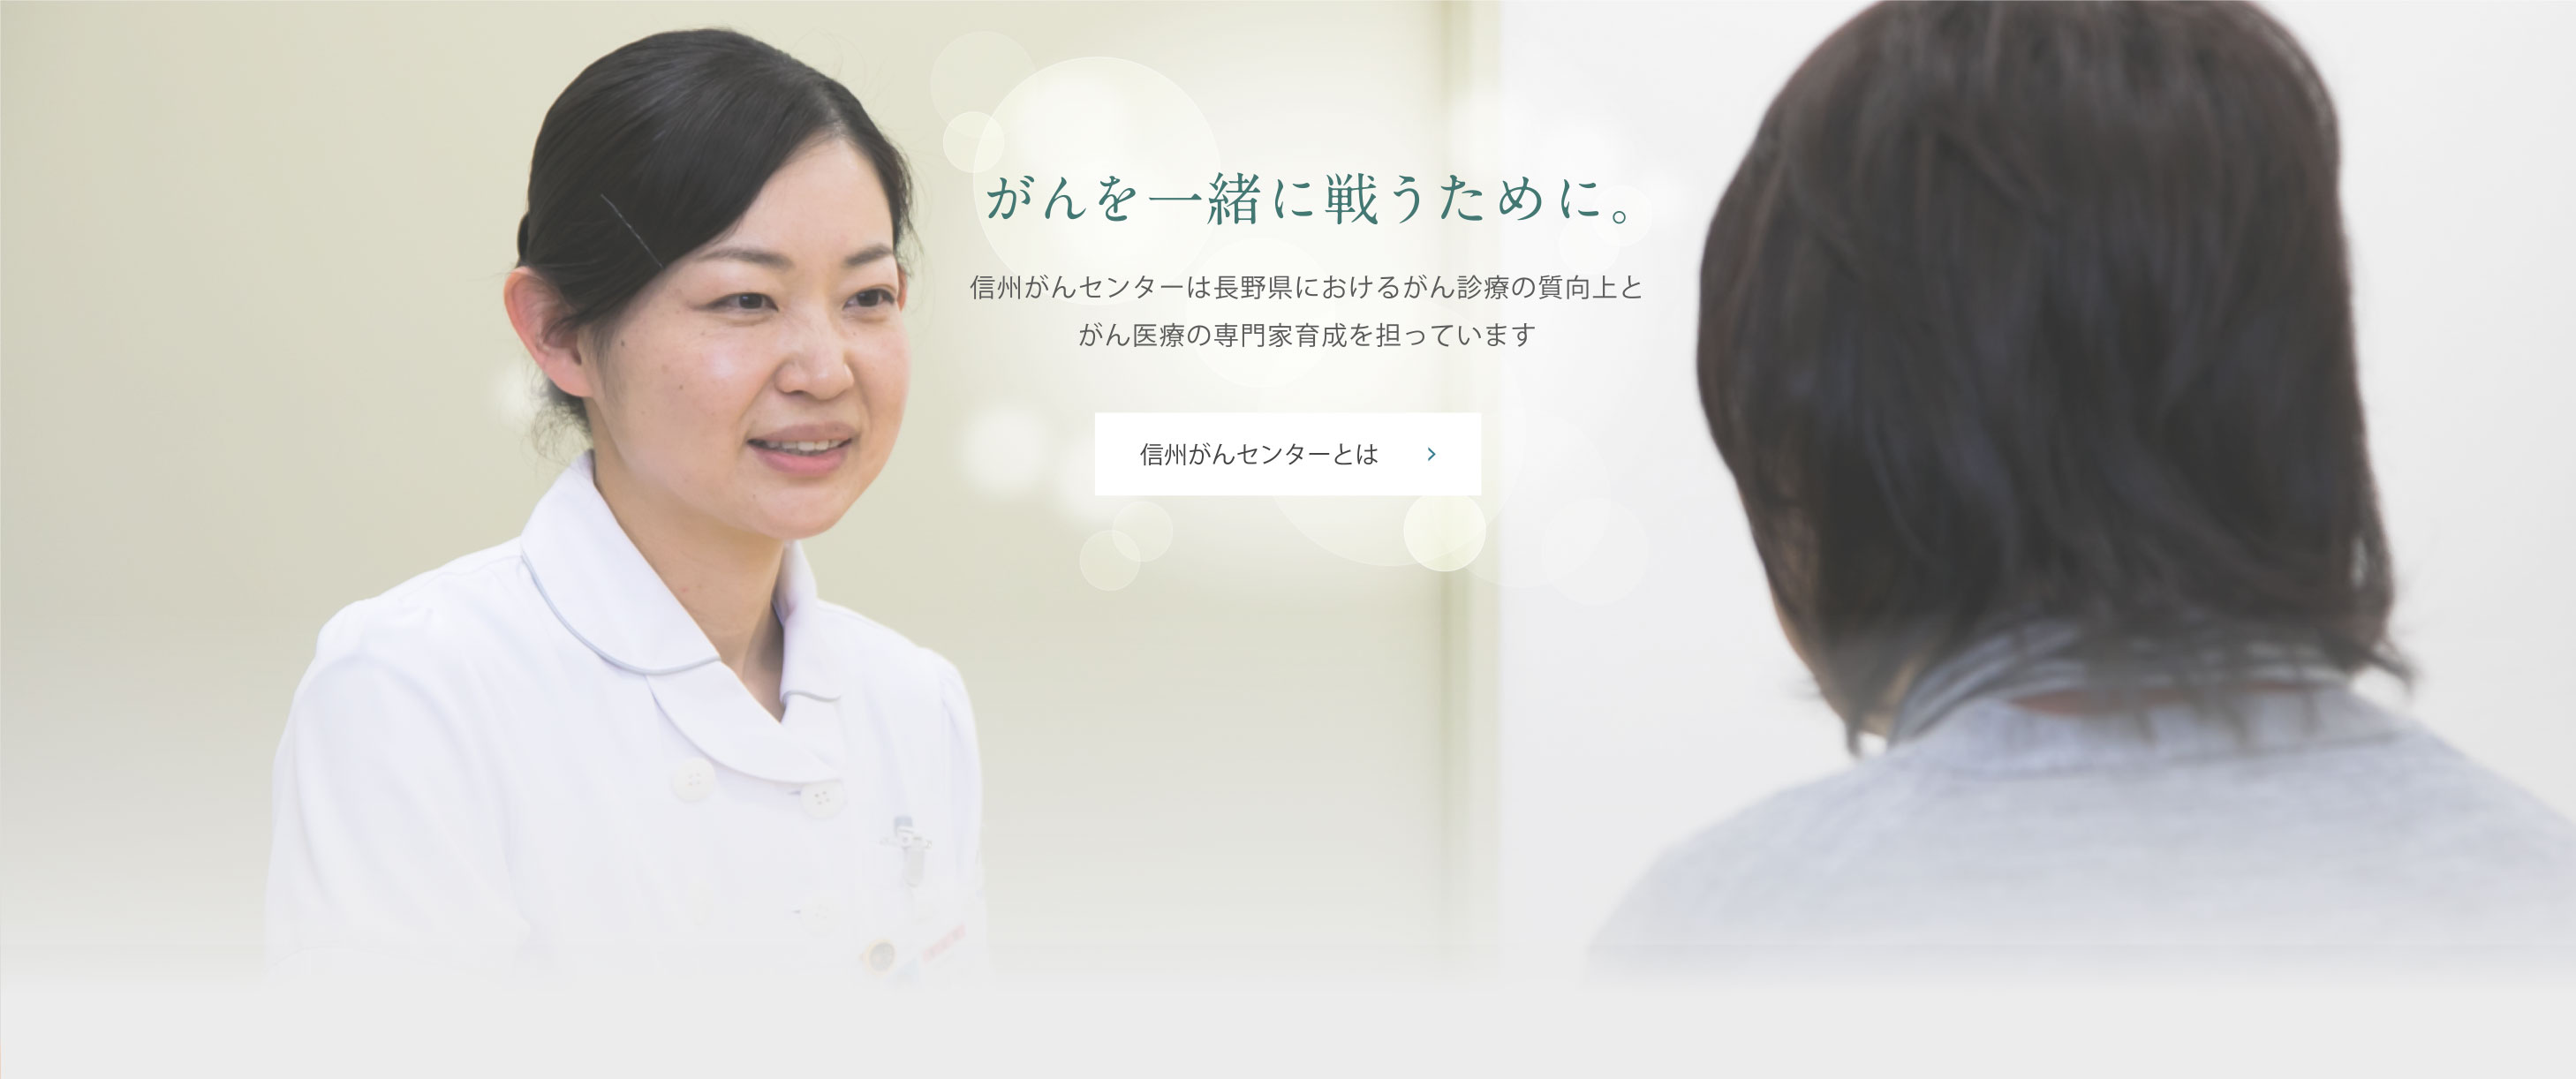 がんを一緒に戦うために。信州がんセンターは長野県におけるがん診療の質向上とがん医療の専門家育成を担っています